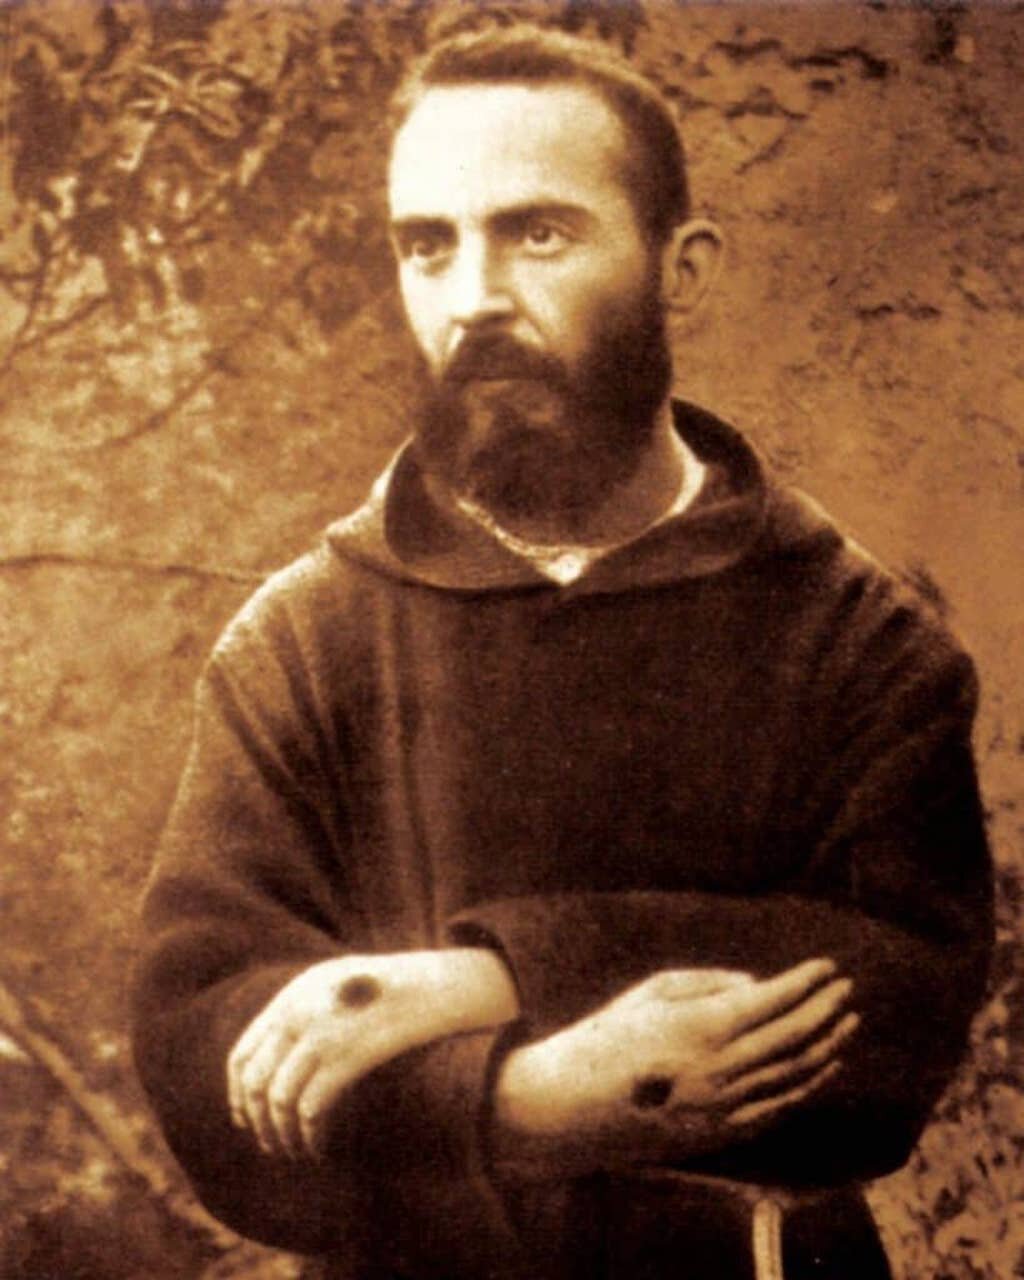 Francesco Forgione est mieux connu sous le nom de Padre Pio. Les stigmates sont visibles sur ses mains.